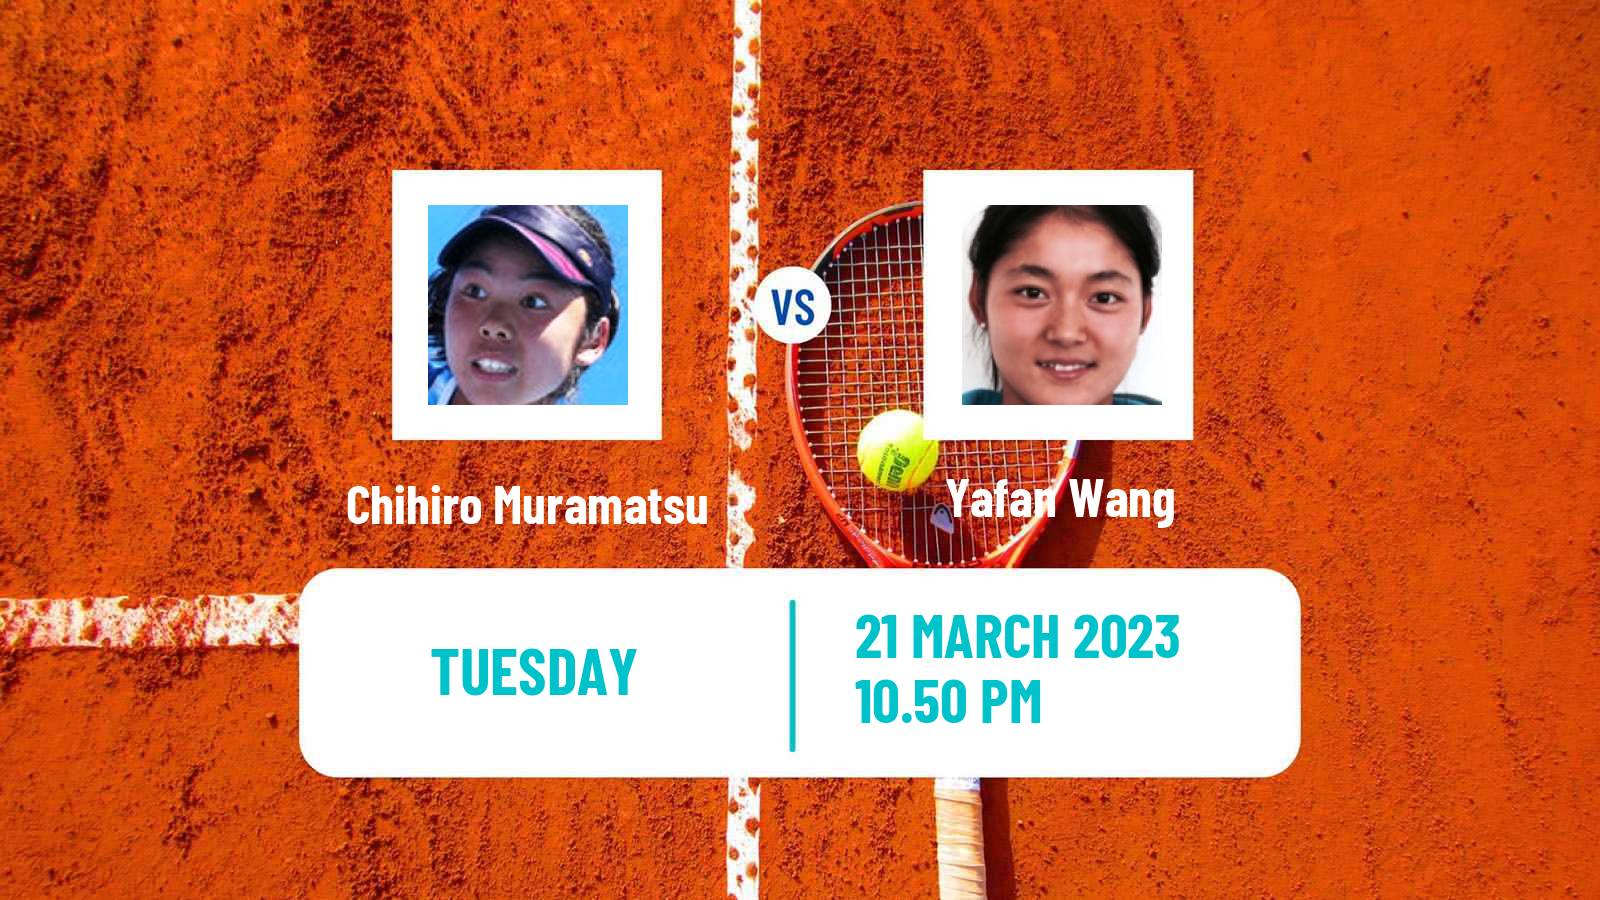 Tennis ITF Tournaments Chihiro Muramatsu - Yafan Wang